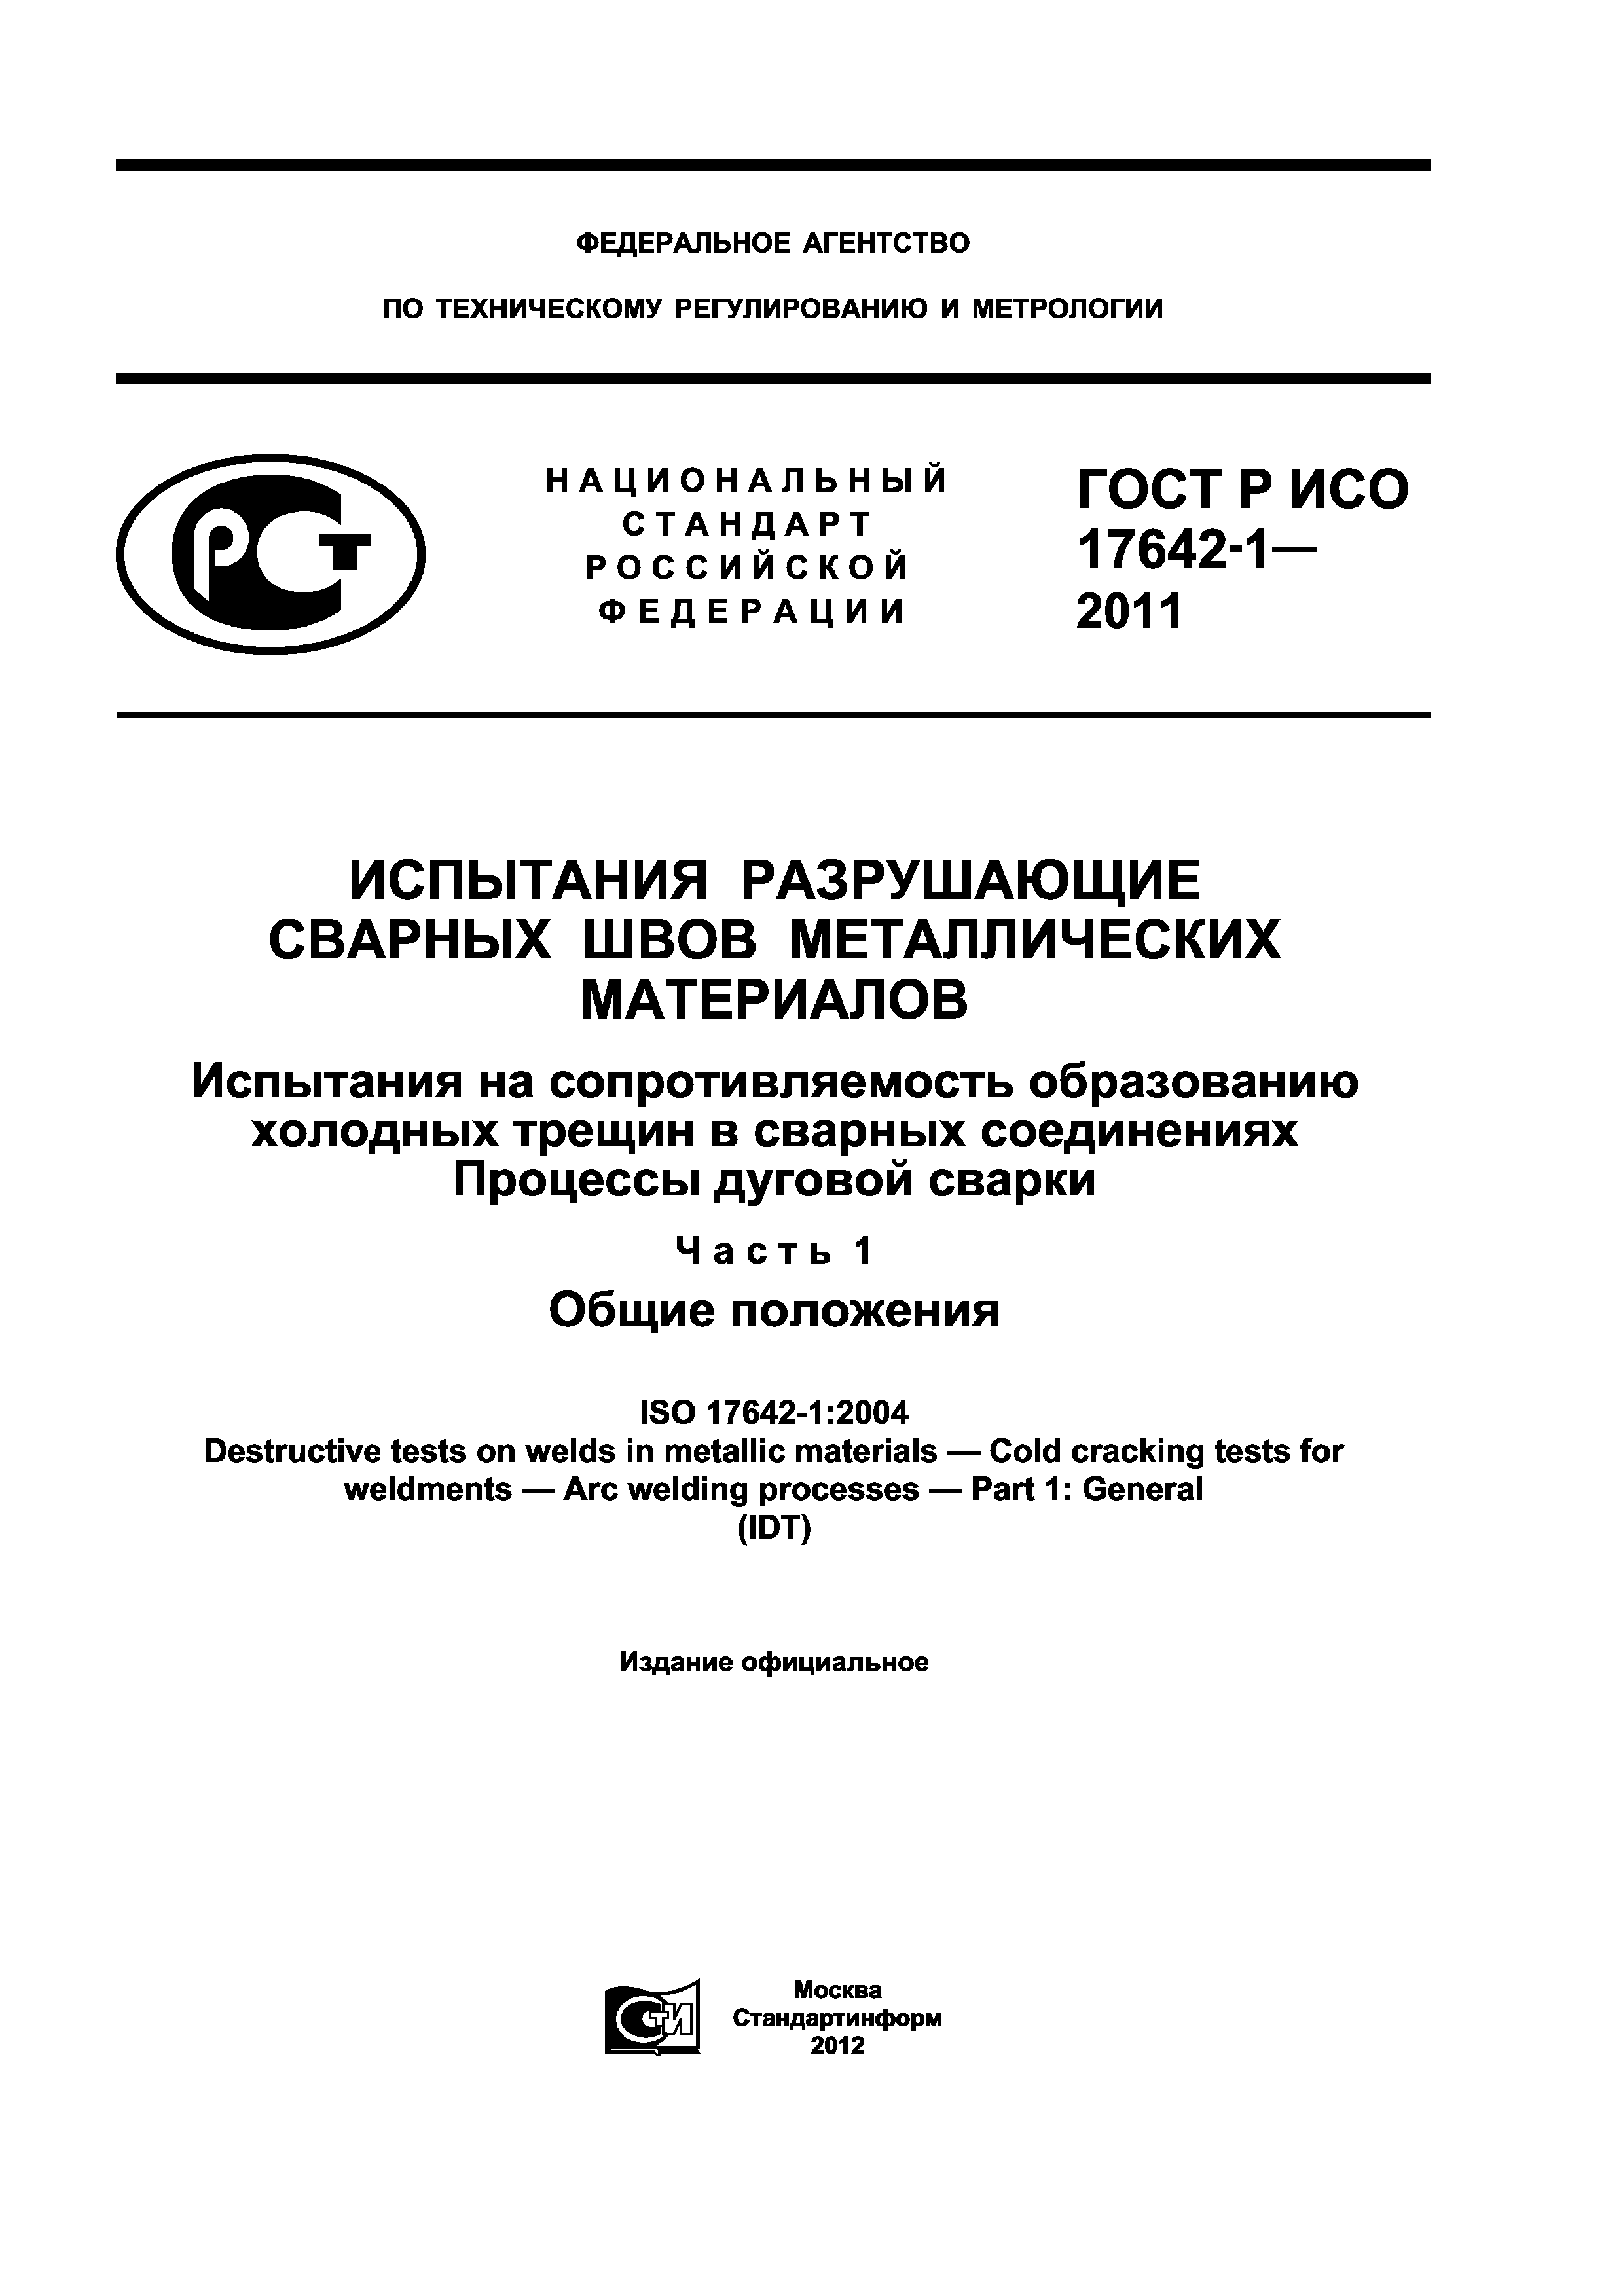 ГОСТ Р ИСО 17642-1-2011